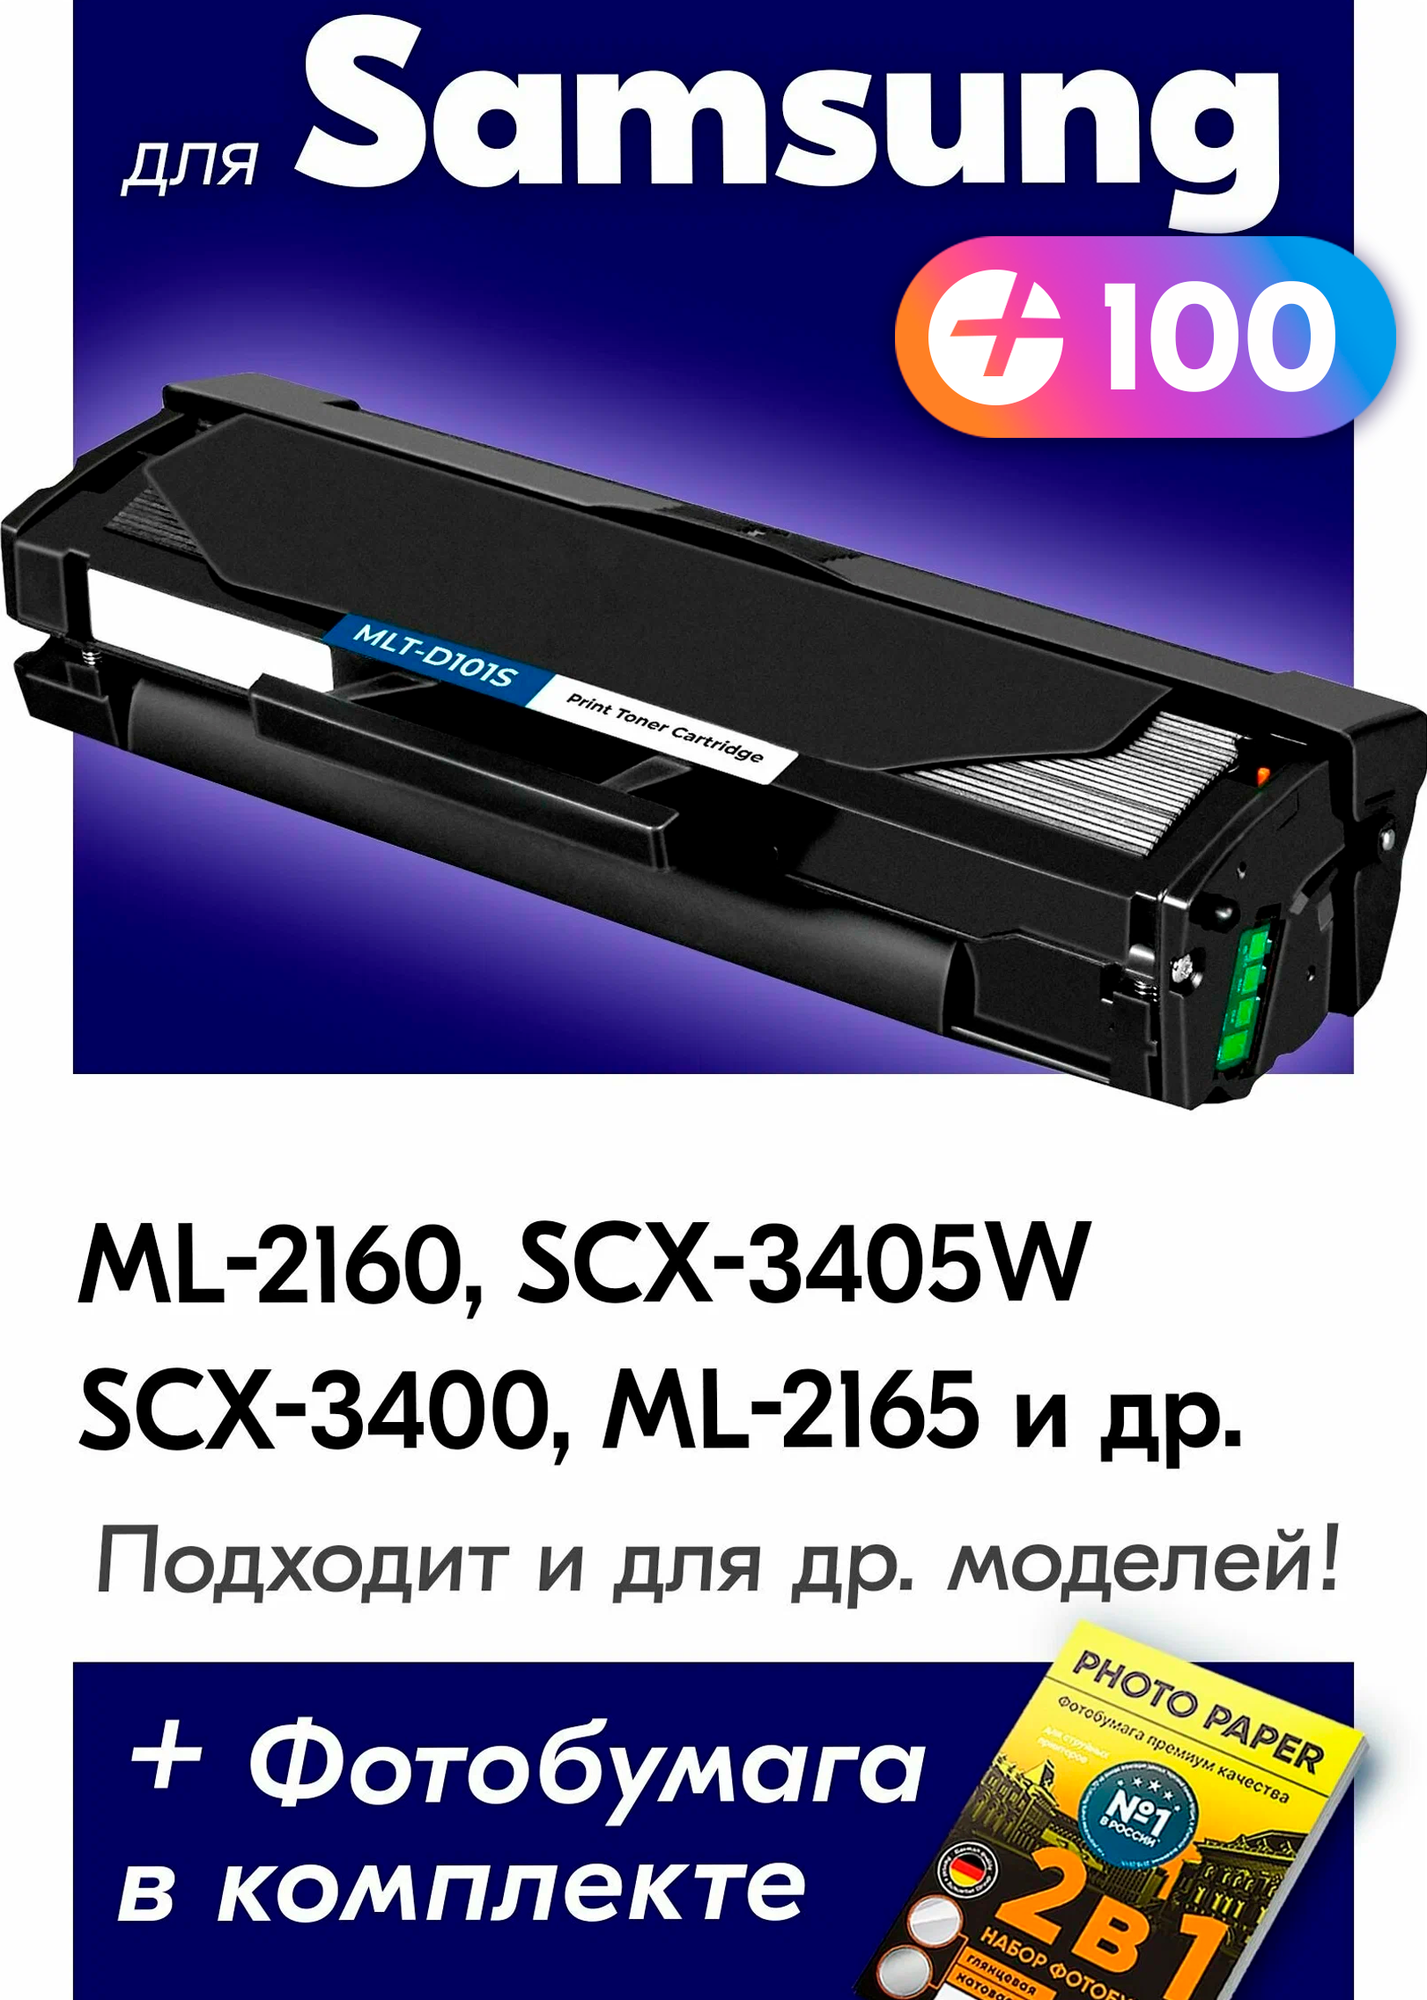 Лазерный картридж для Samsung MLT-D101S, Samsung ML-2160, SCX-3405FW, ML-2162, SCX-3405W и др. с краской (тонером) черный новый заправляемый